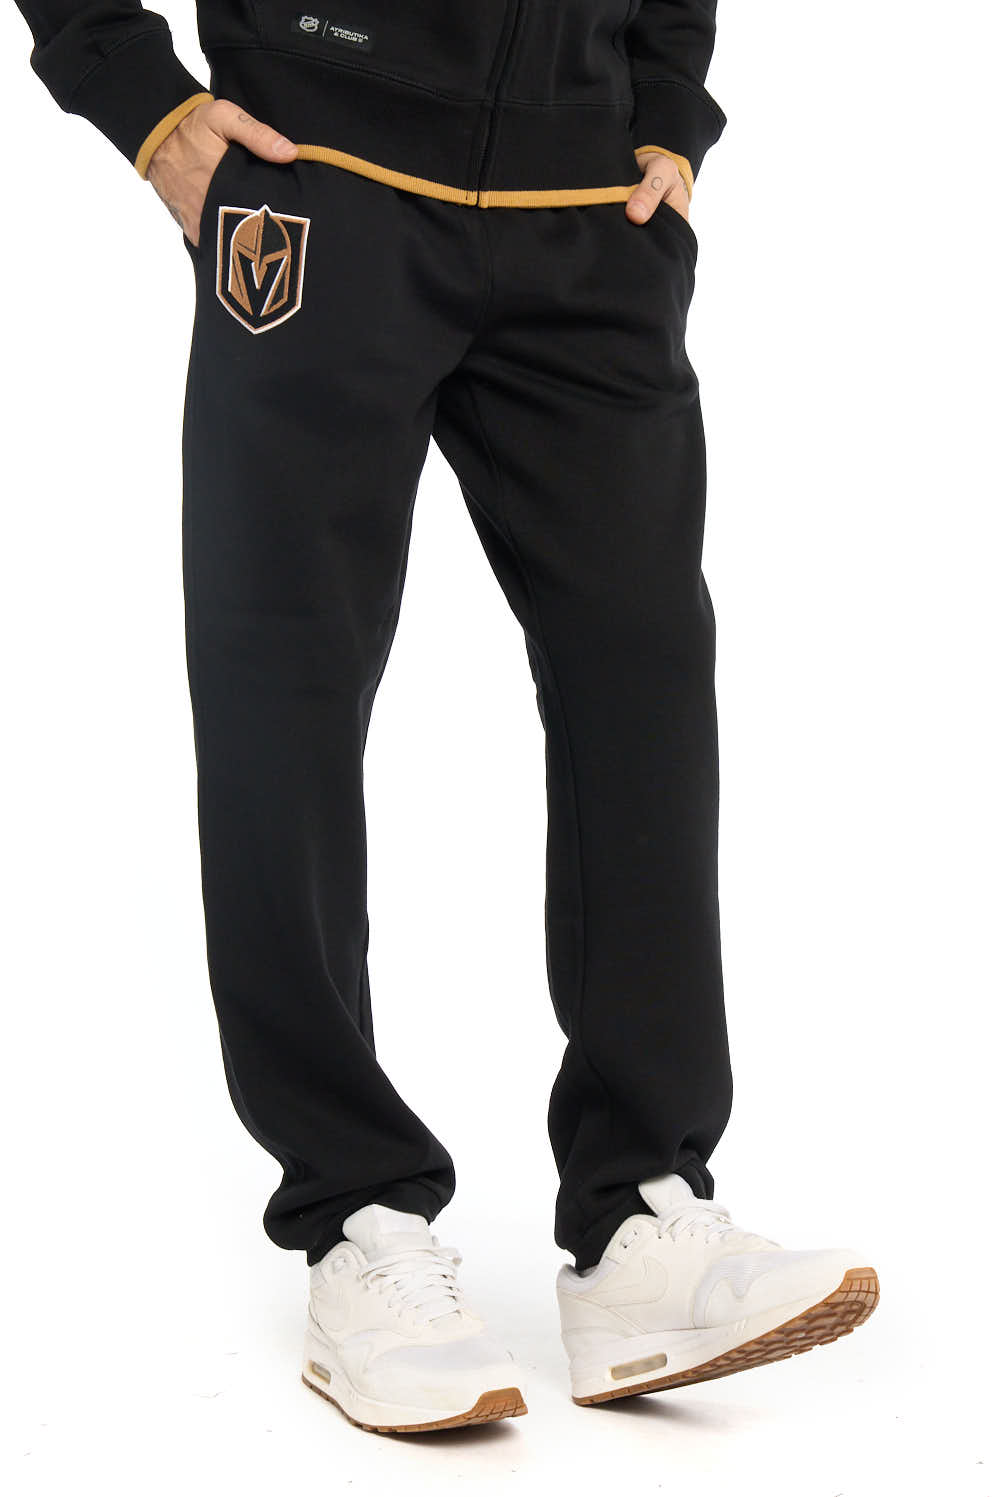 Спортивные брюки мужские Atributika&Club Вегас Голден Найтс 46350 черные M